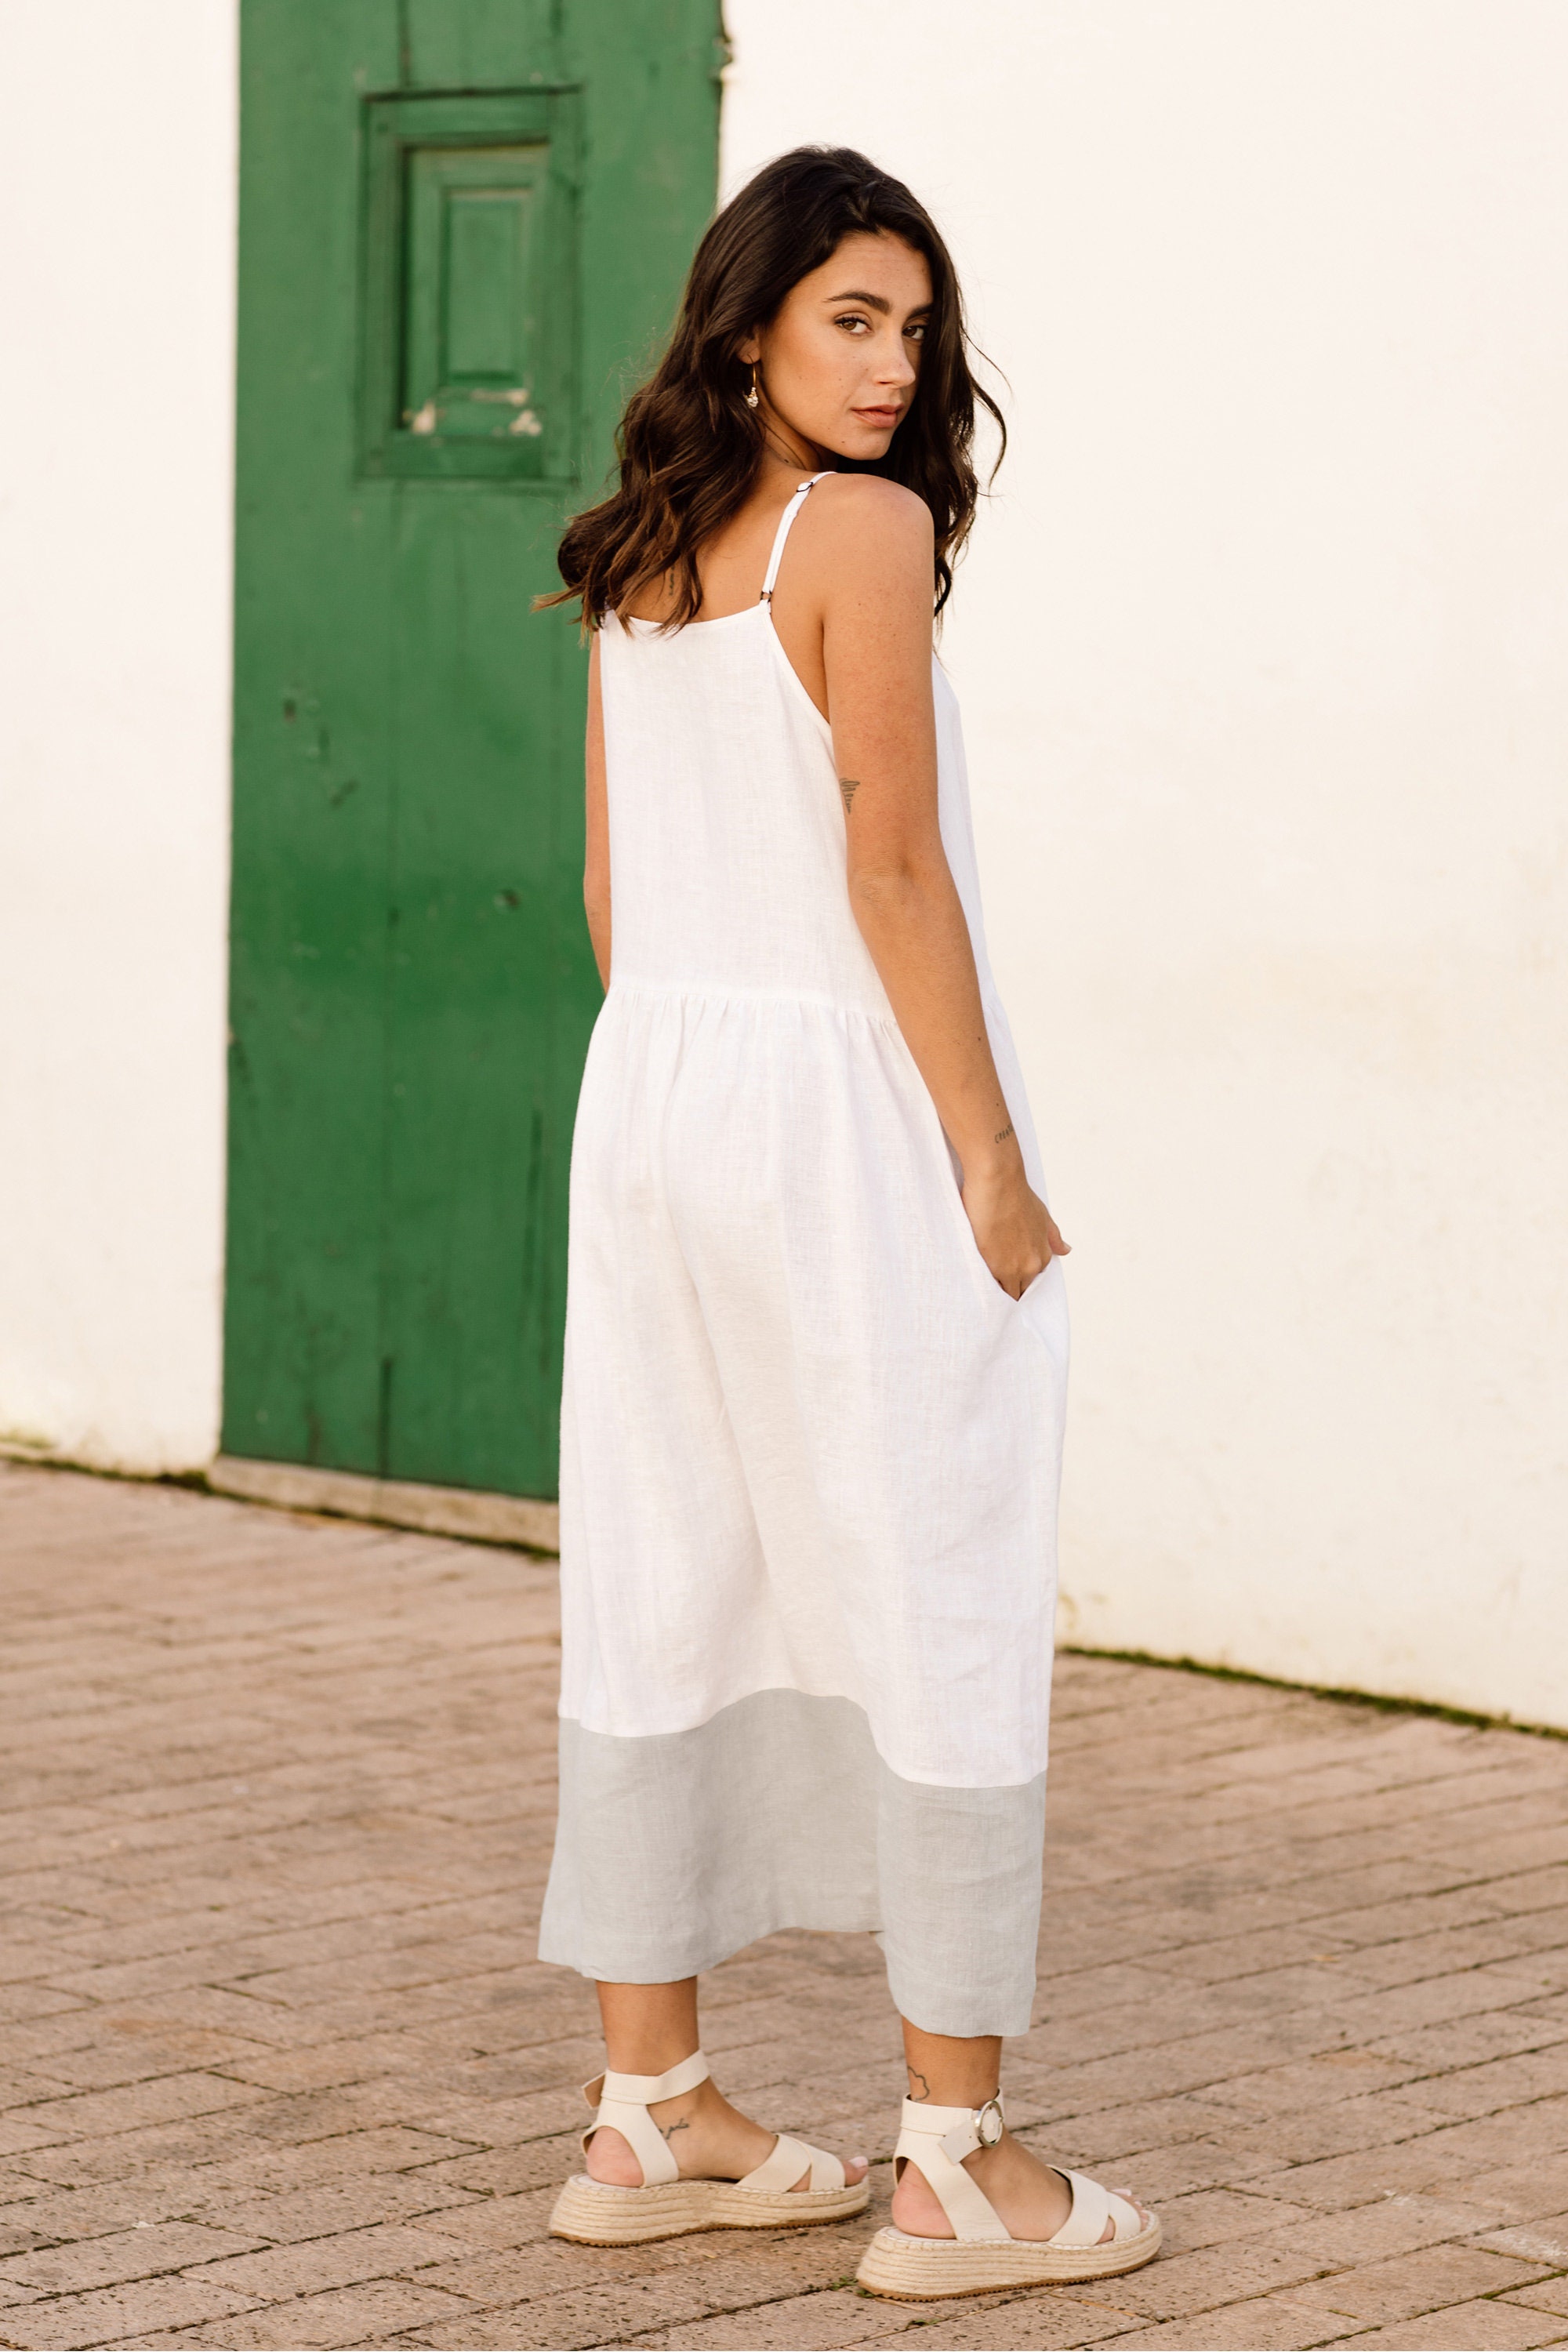 Color-block Linen Dress ADRIA / Midi White and Gray Linen Tunic Dress 